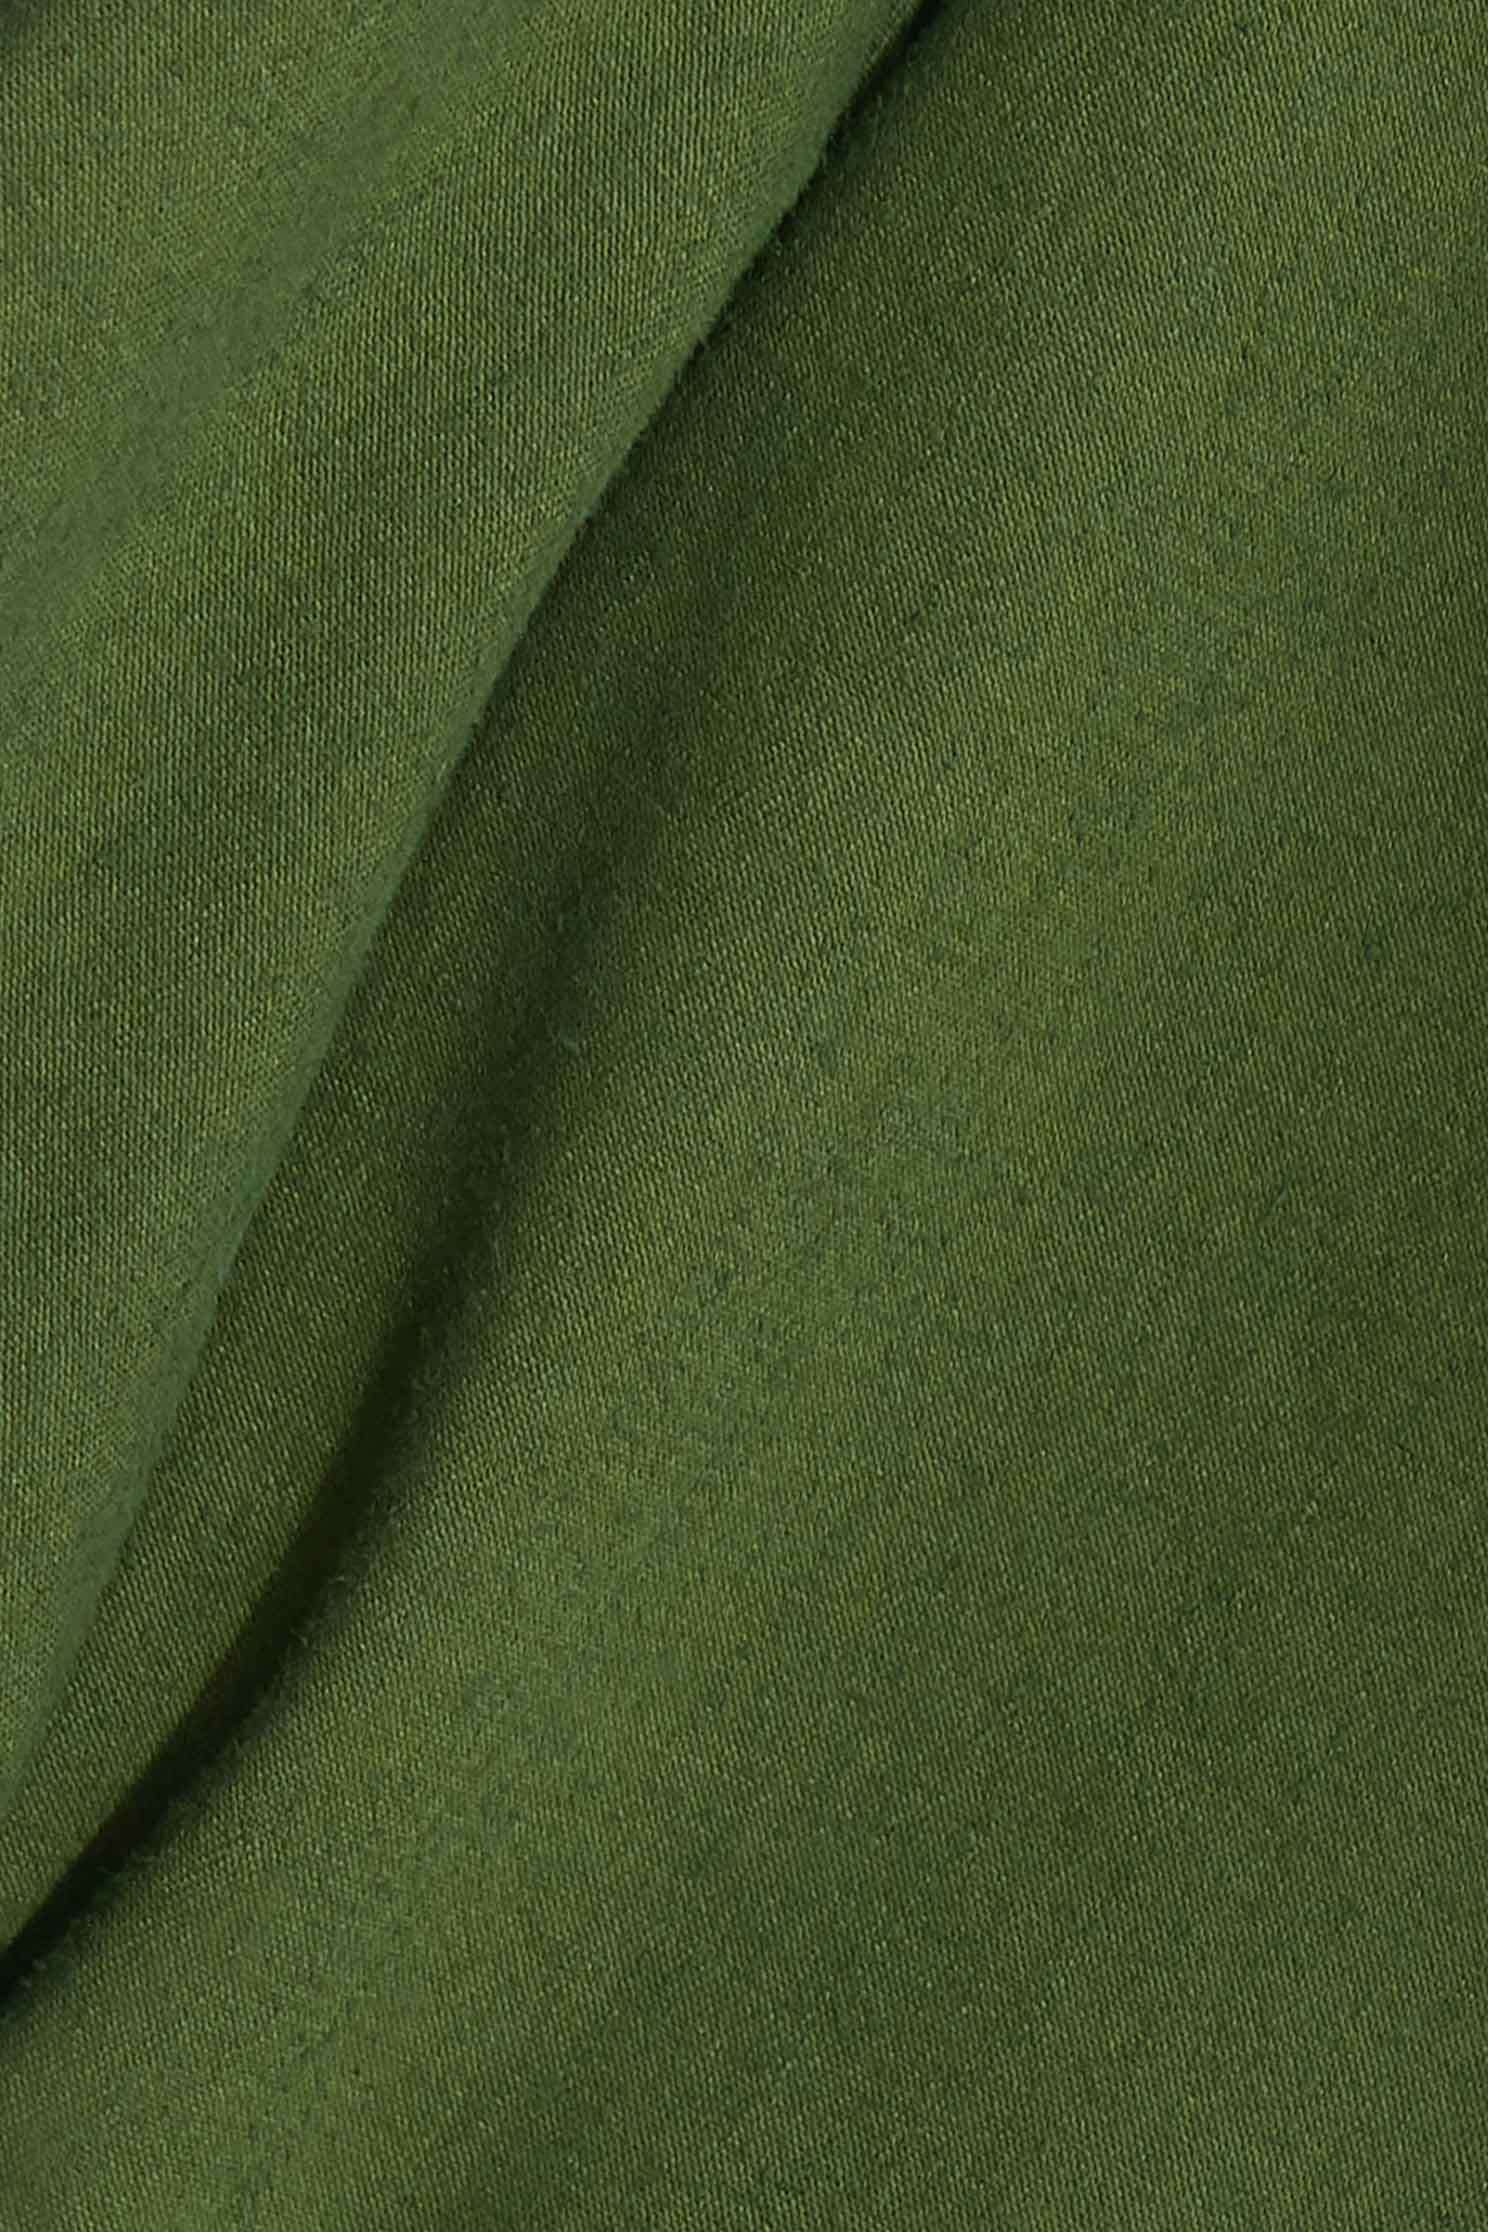 襯衫袖型風衣外套,長版 外套,棉 外套,綠色 外套襯衫袖型風衣外套,外套,新年開運特輯,秋冬穿搭,腰帶,襯衫,長大衣,風衣